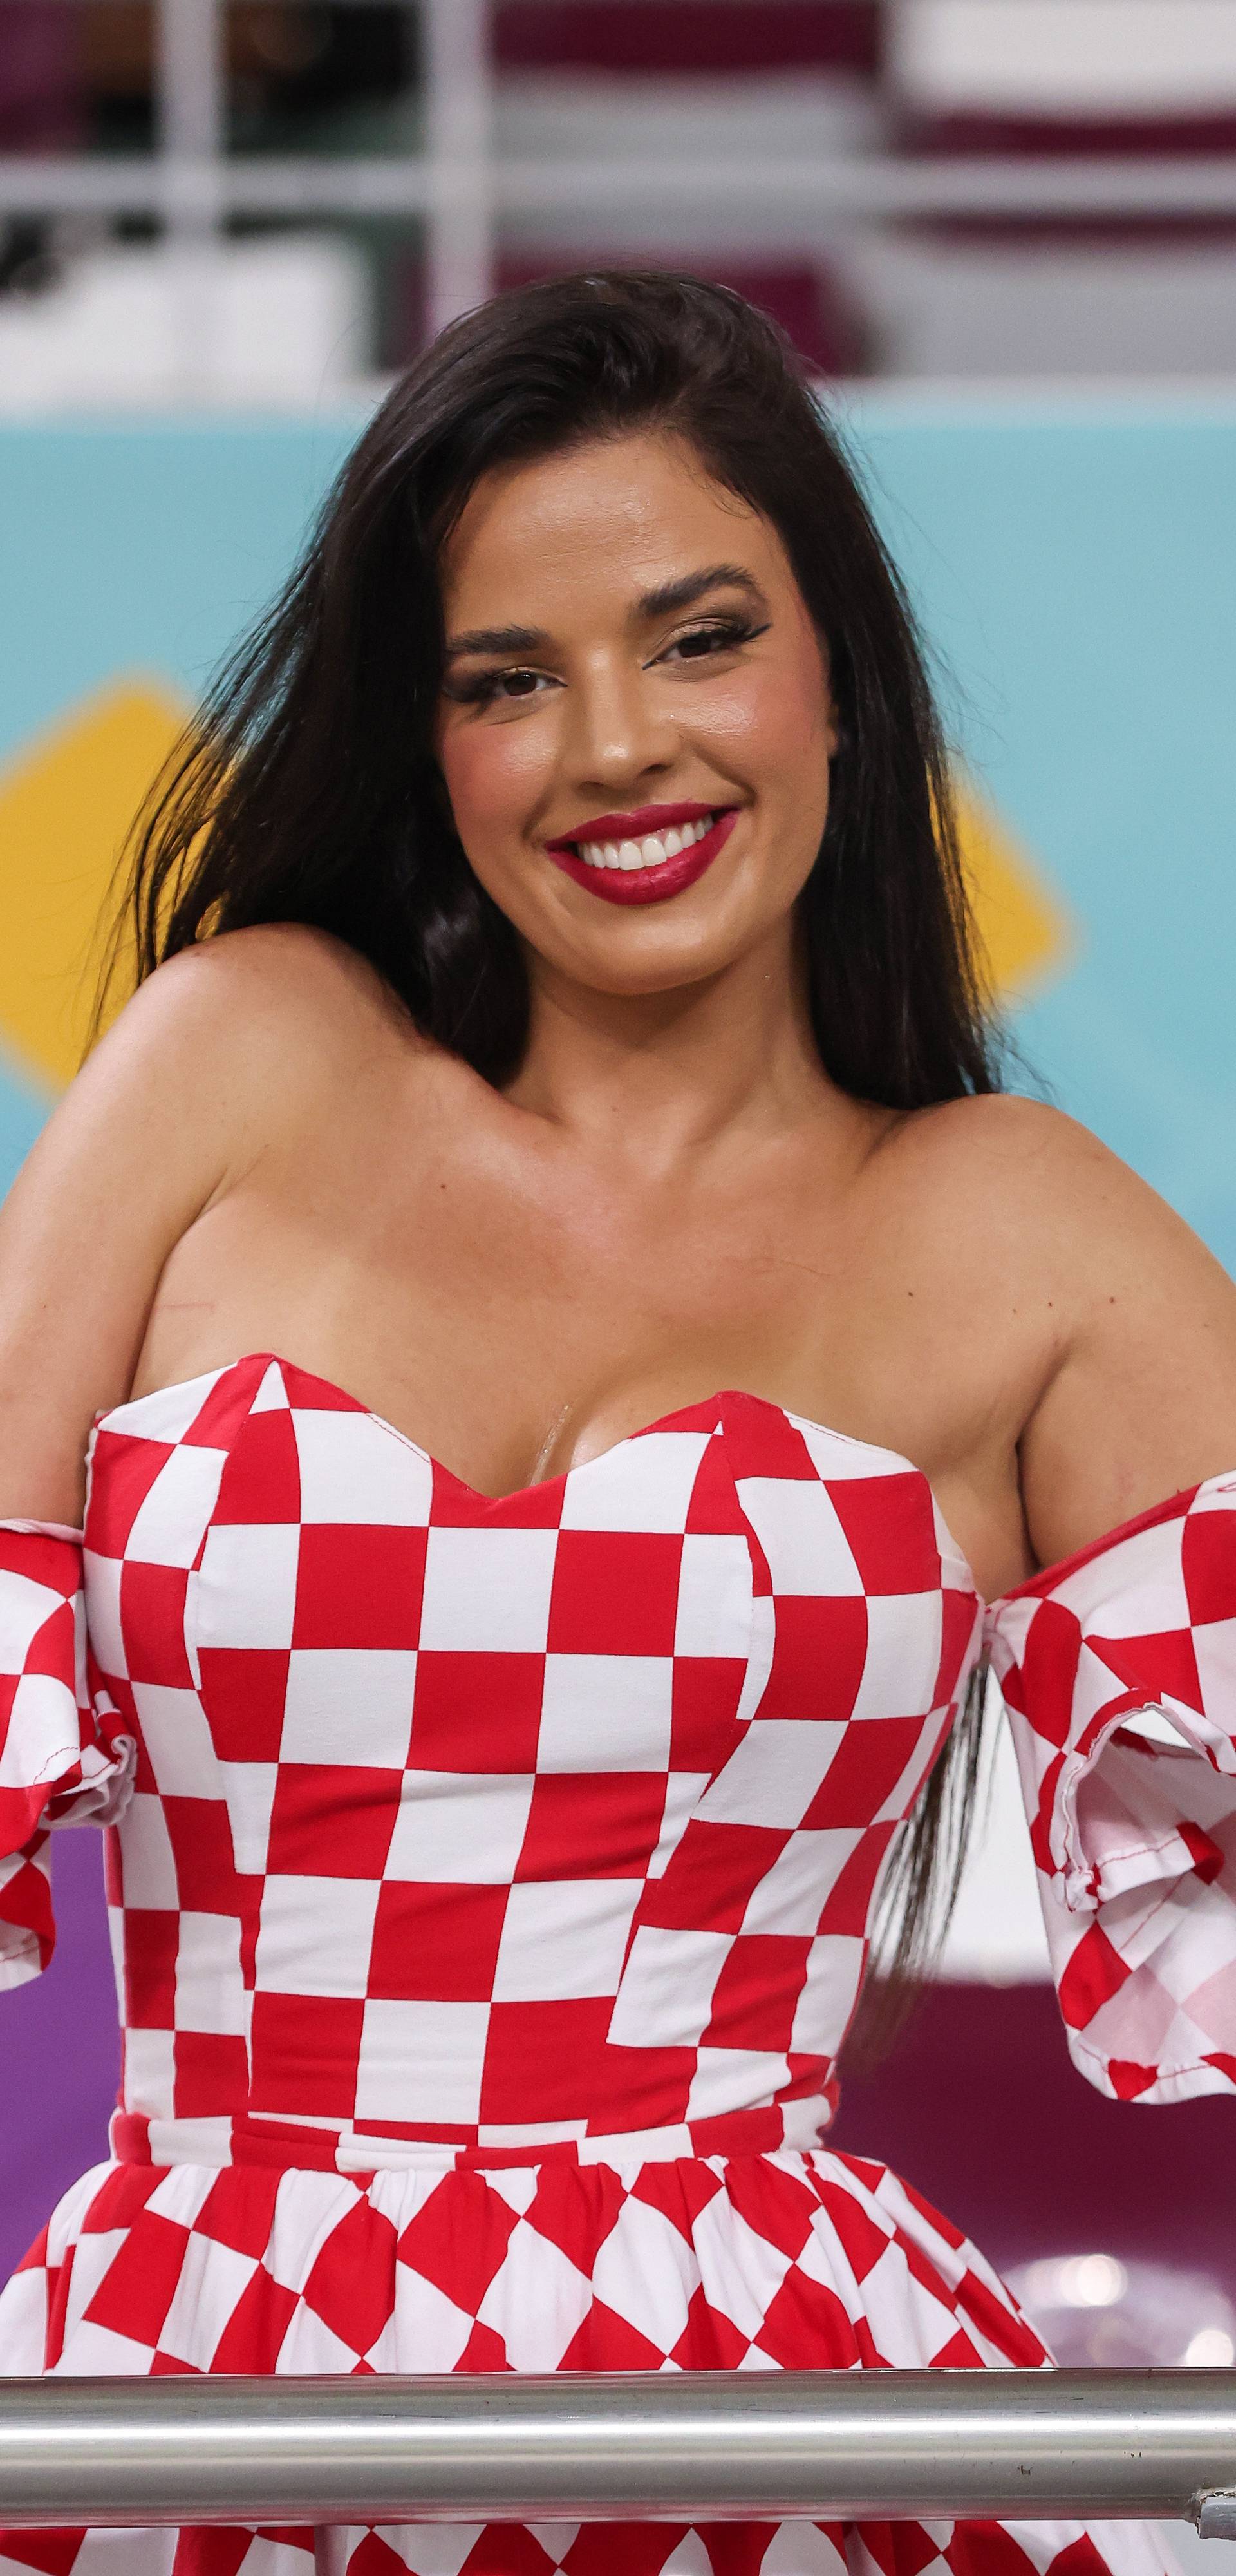 KATAR 2022 - Ivana Knoll u haljini s kockicama na utakmici Hrvatske i Kanade